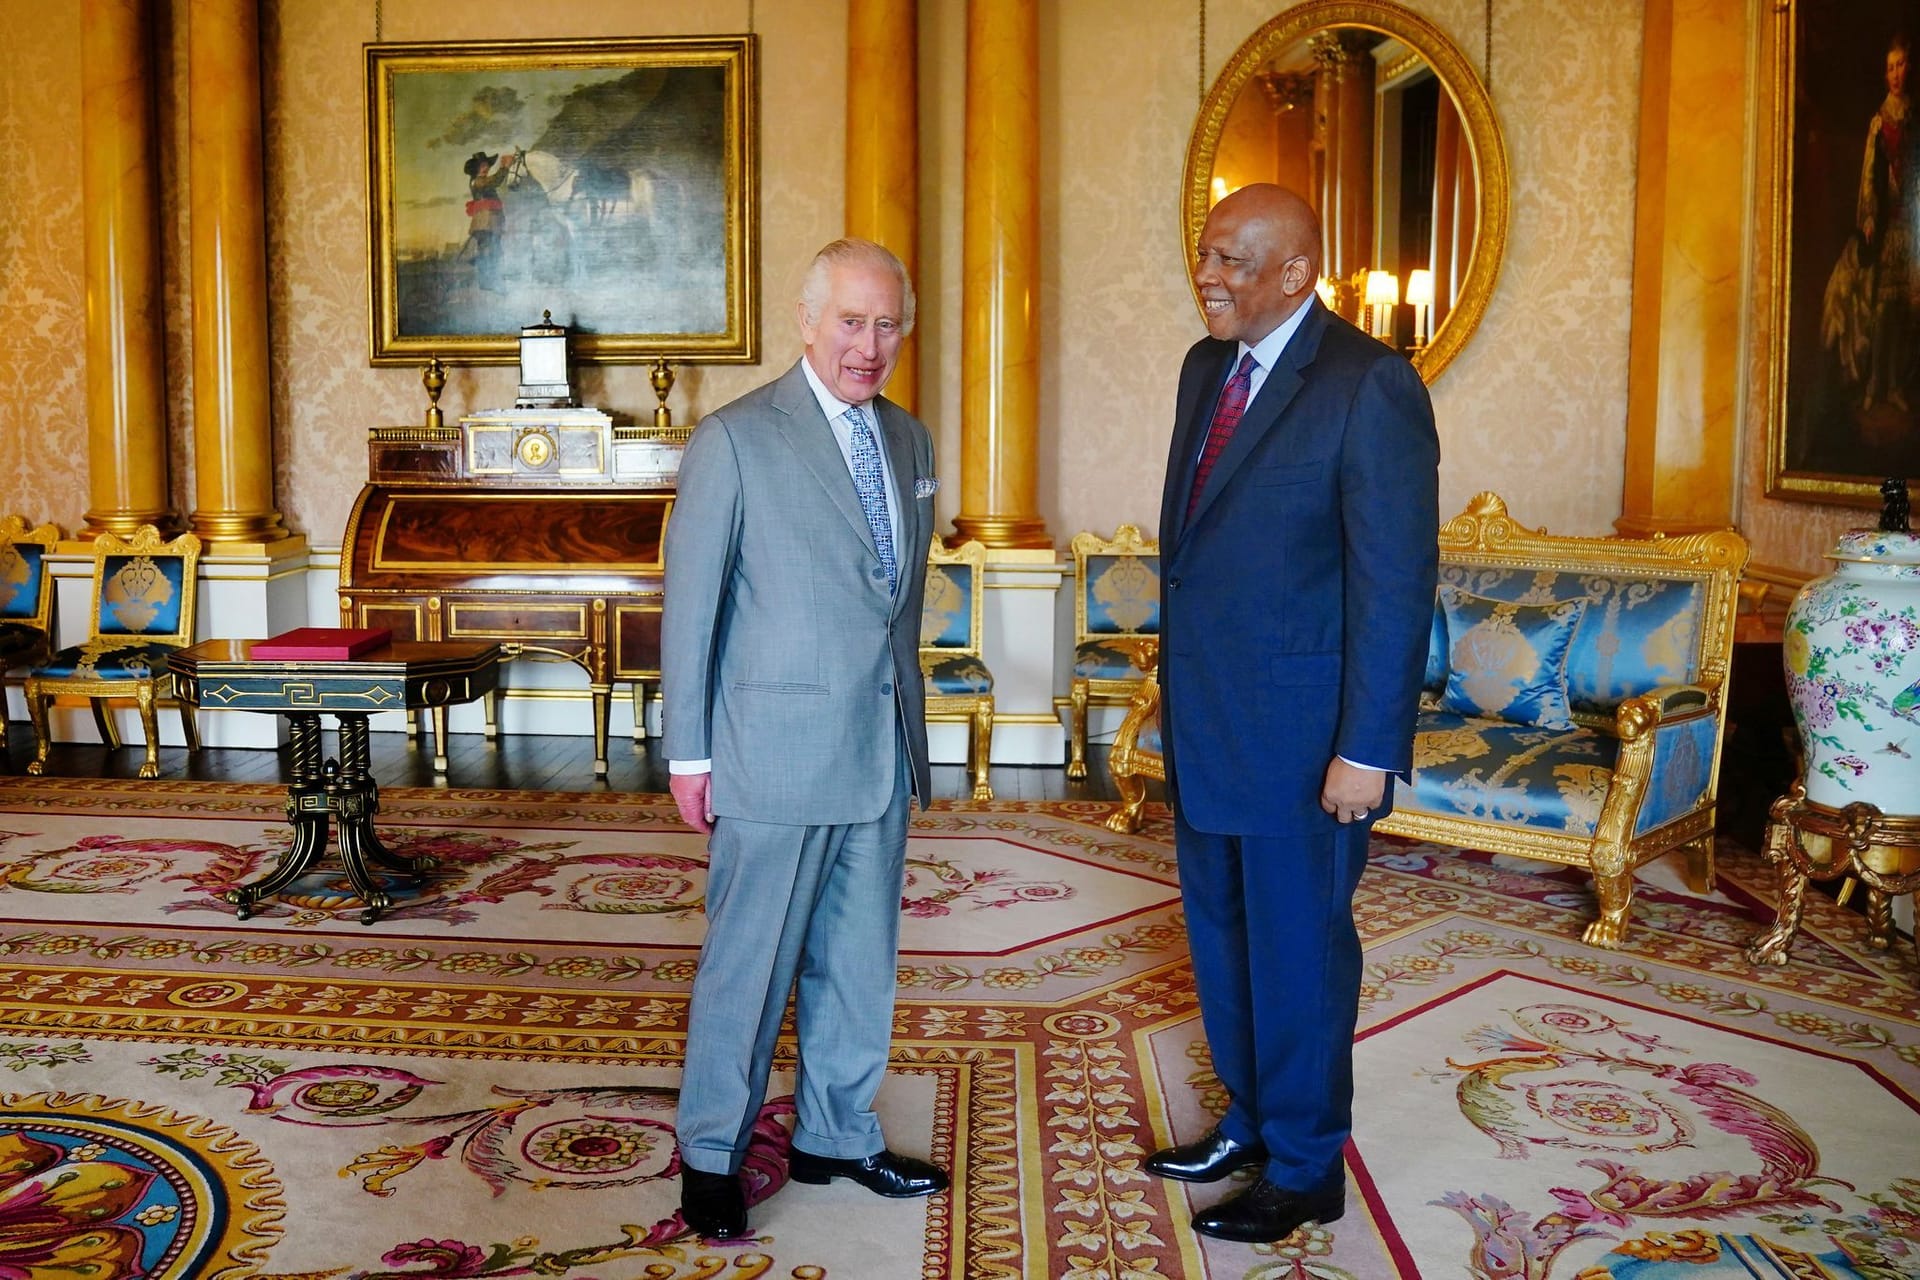 Charles III. begrüßt Letsie von Lesotho